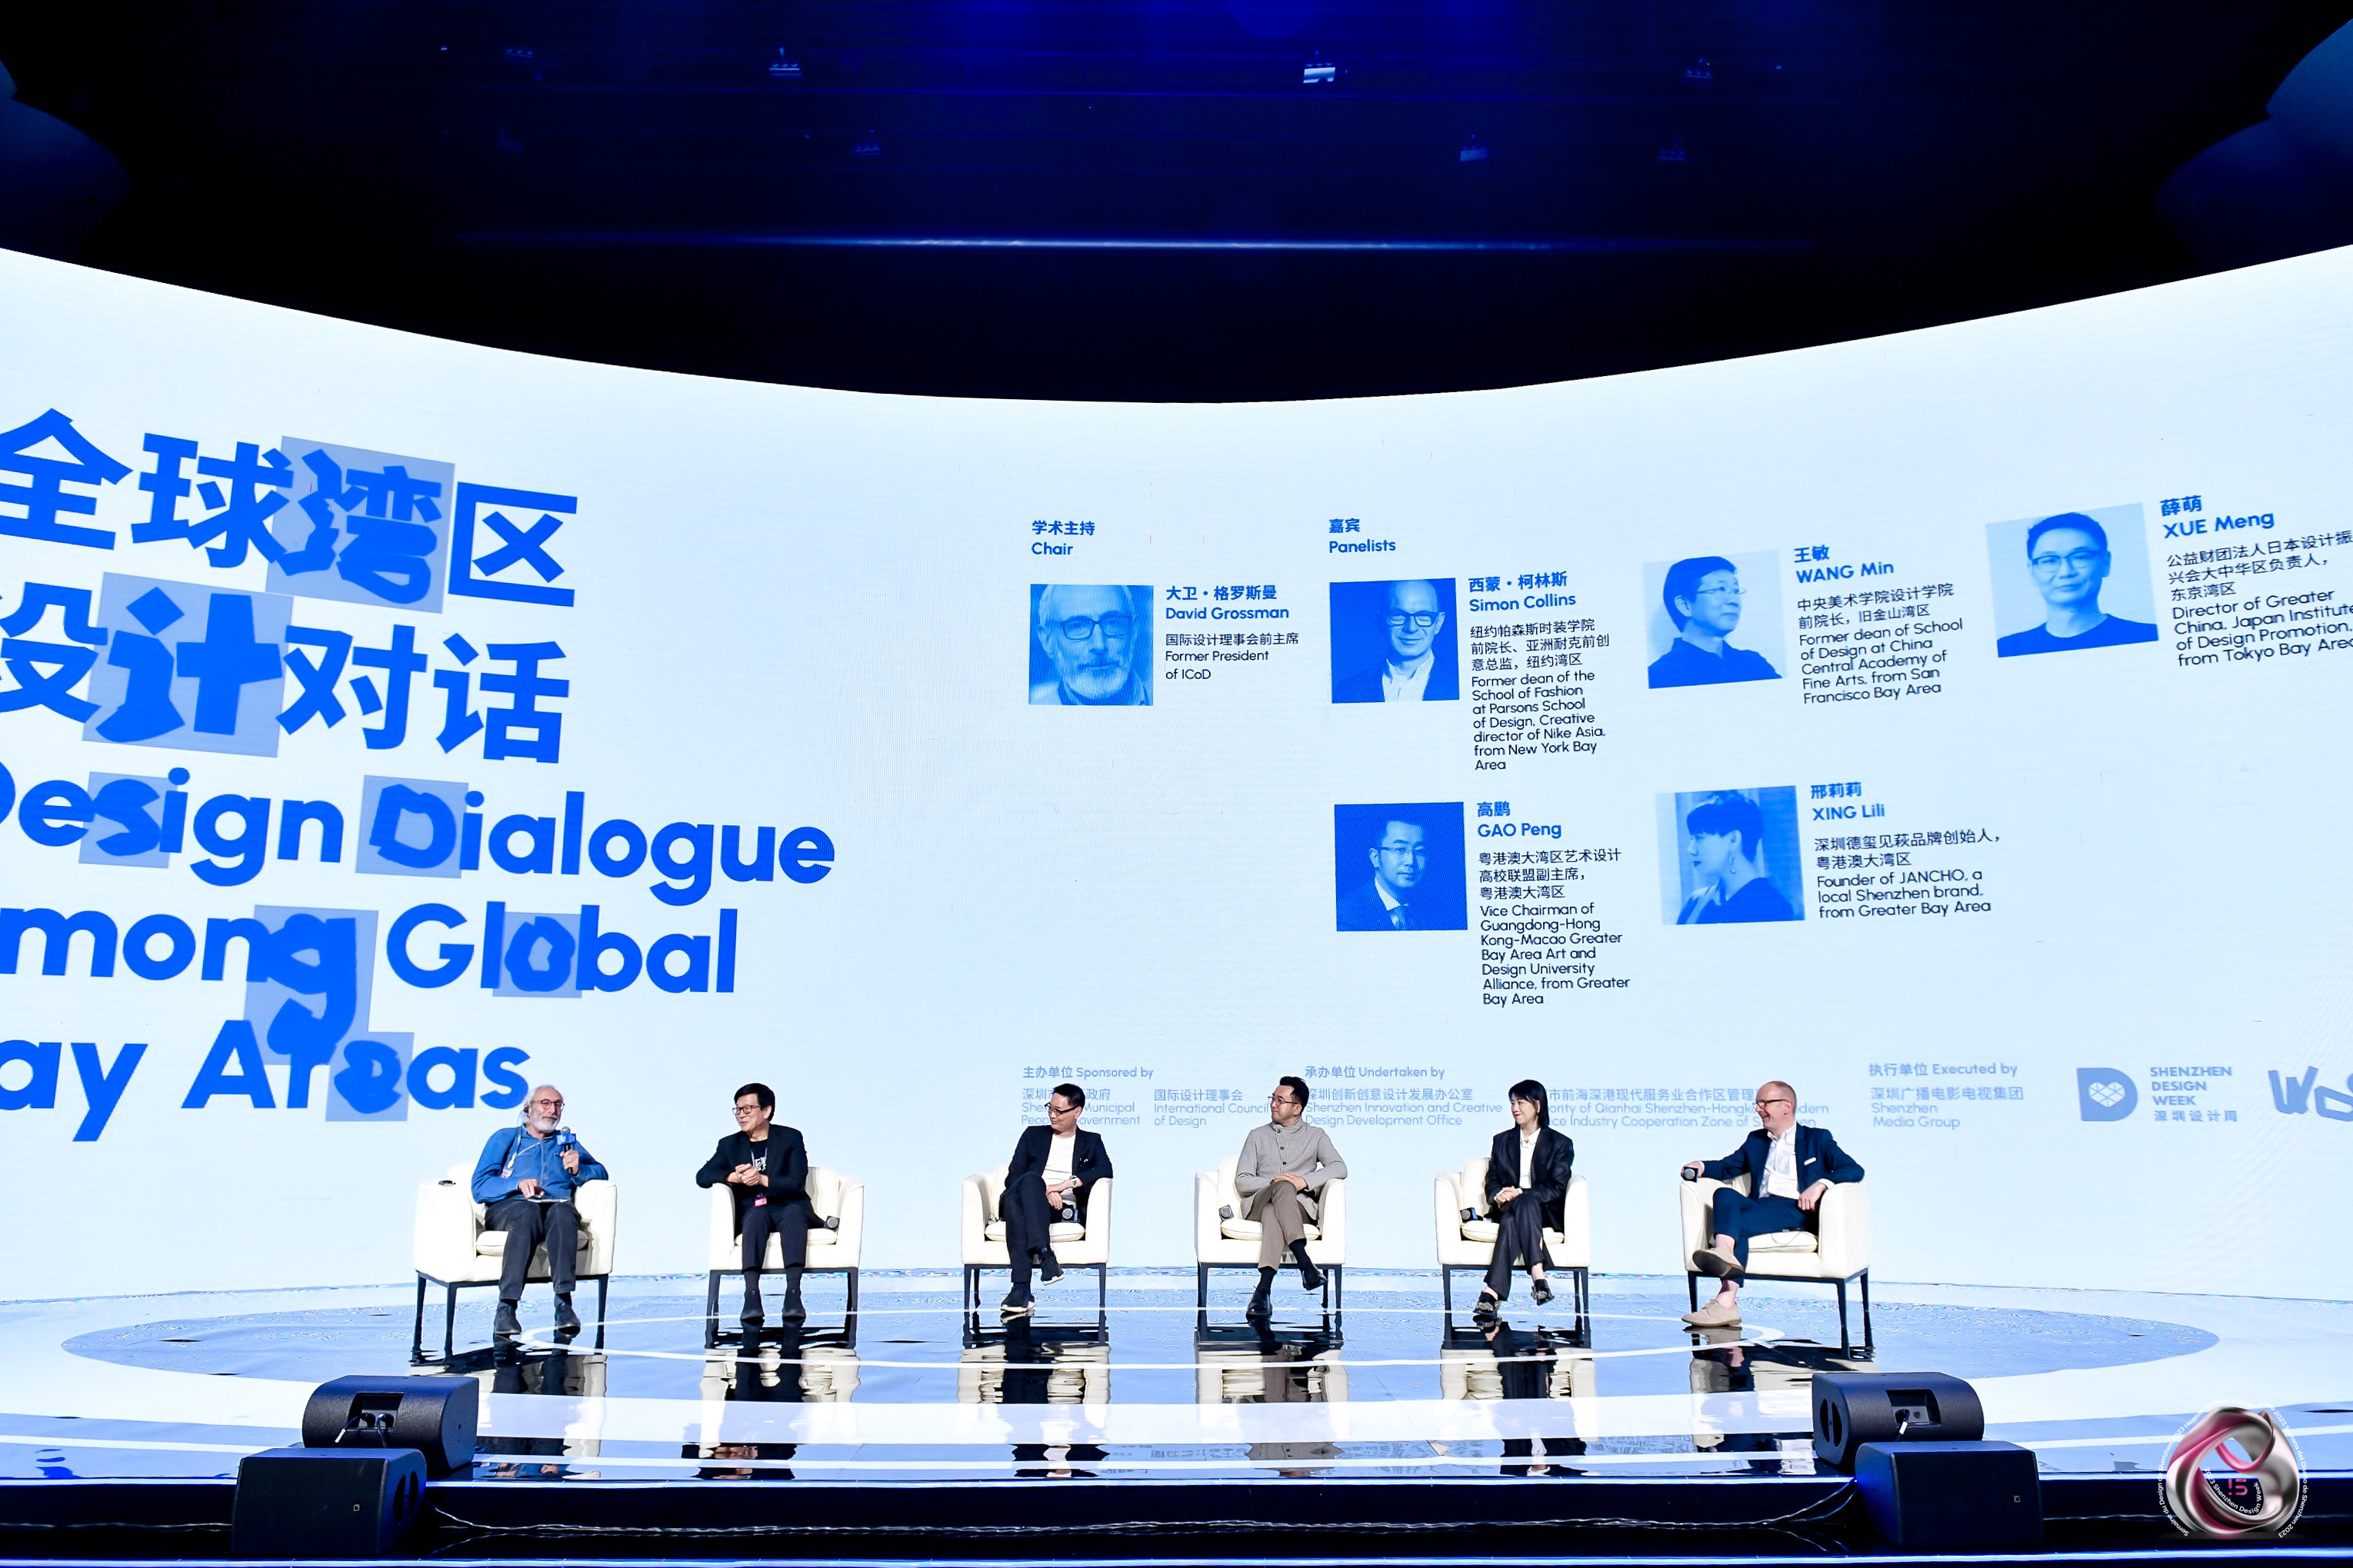 汇聚世界顶尖人才 探讨未来设计趋势 全球设计师大会在深圳举办